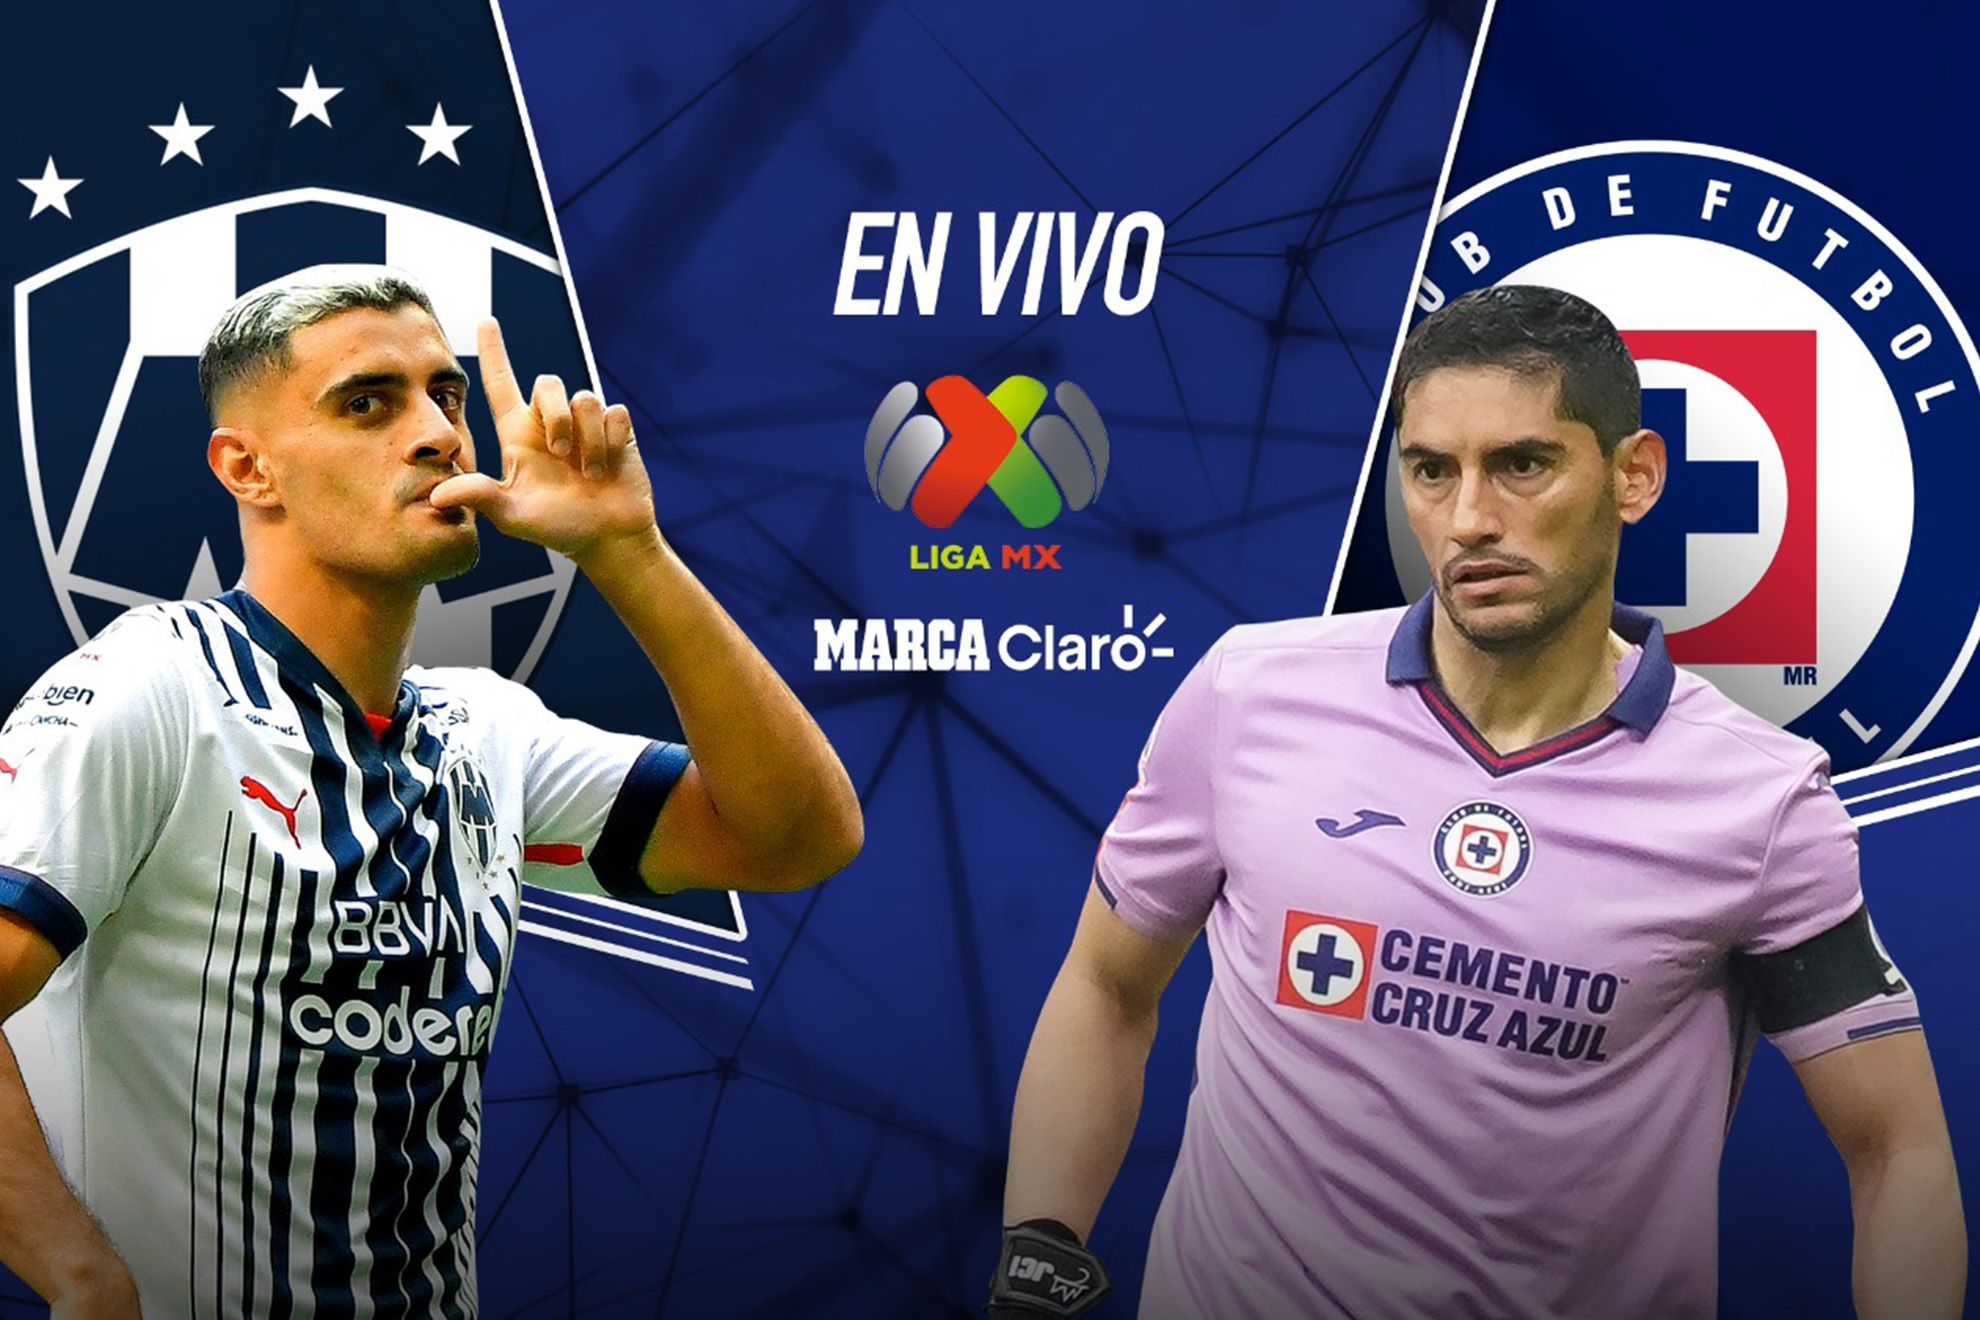 Cruz Azul vs Rayados en vivo y en directo online: marcador y resultado de hoy en directo. | MARCA Claro